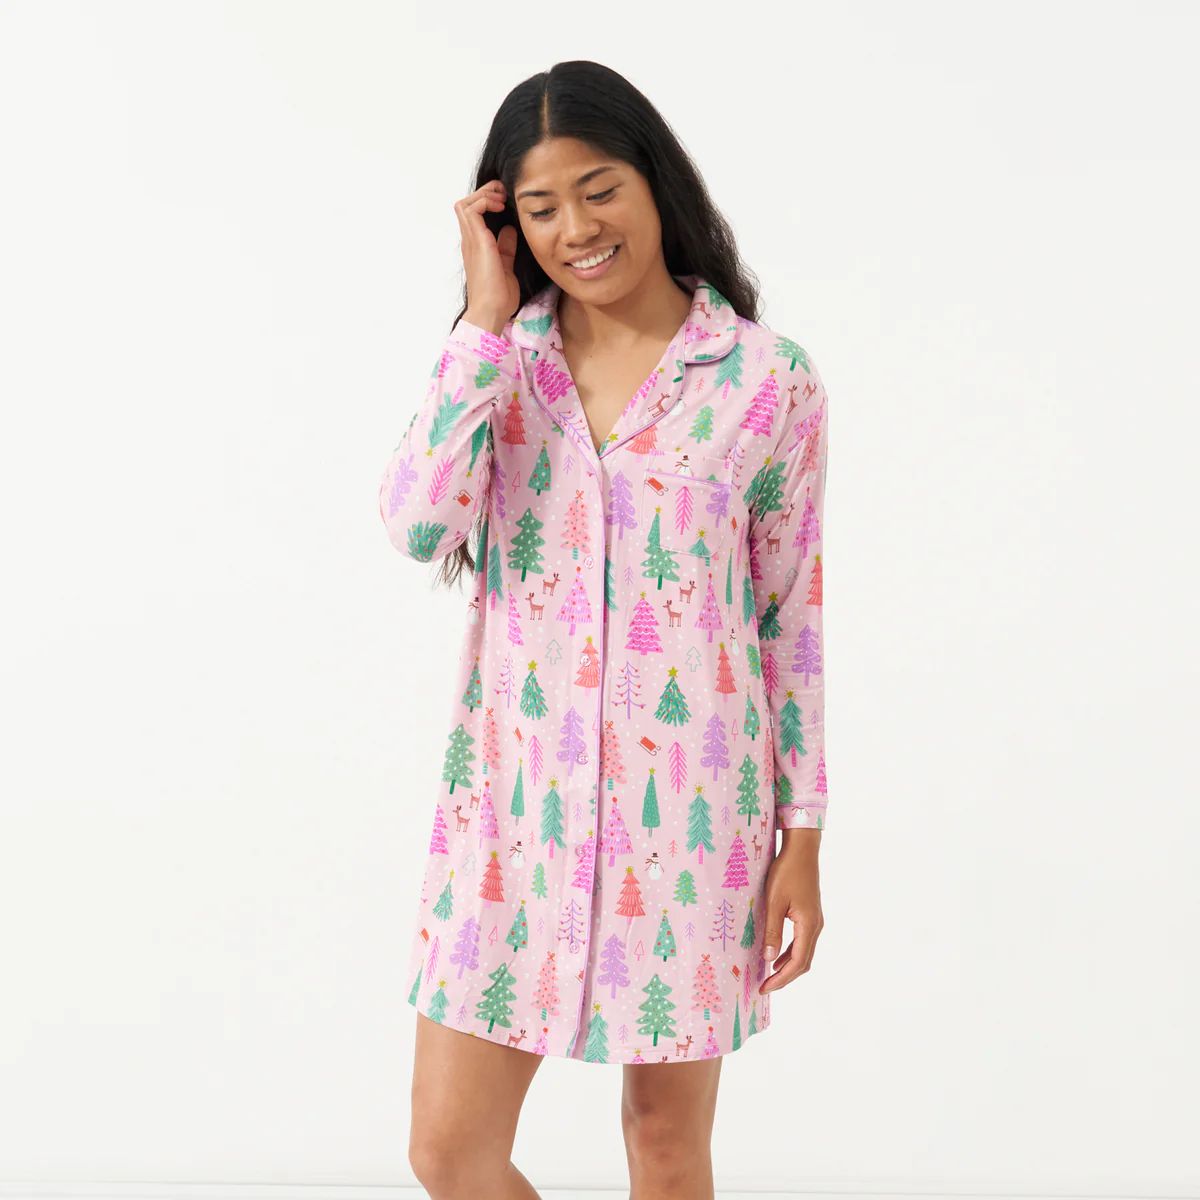 Pink Merry & Bright Women's Long Sleeve Sleep Shirt | Little Sleepies